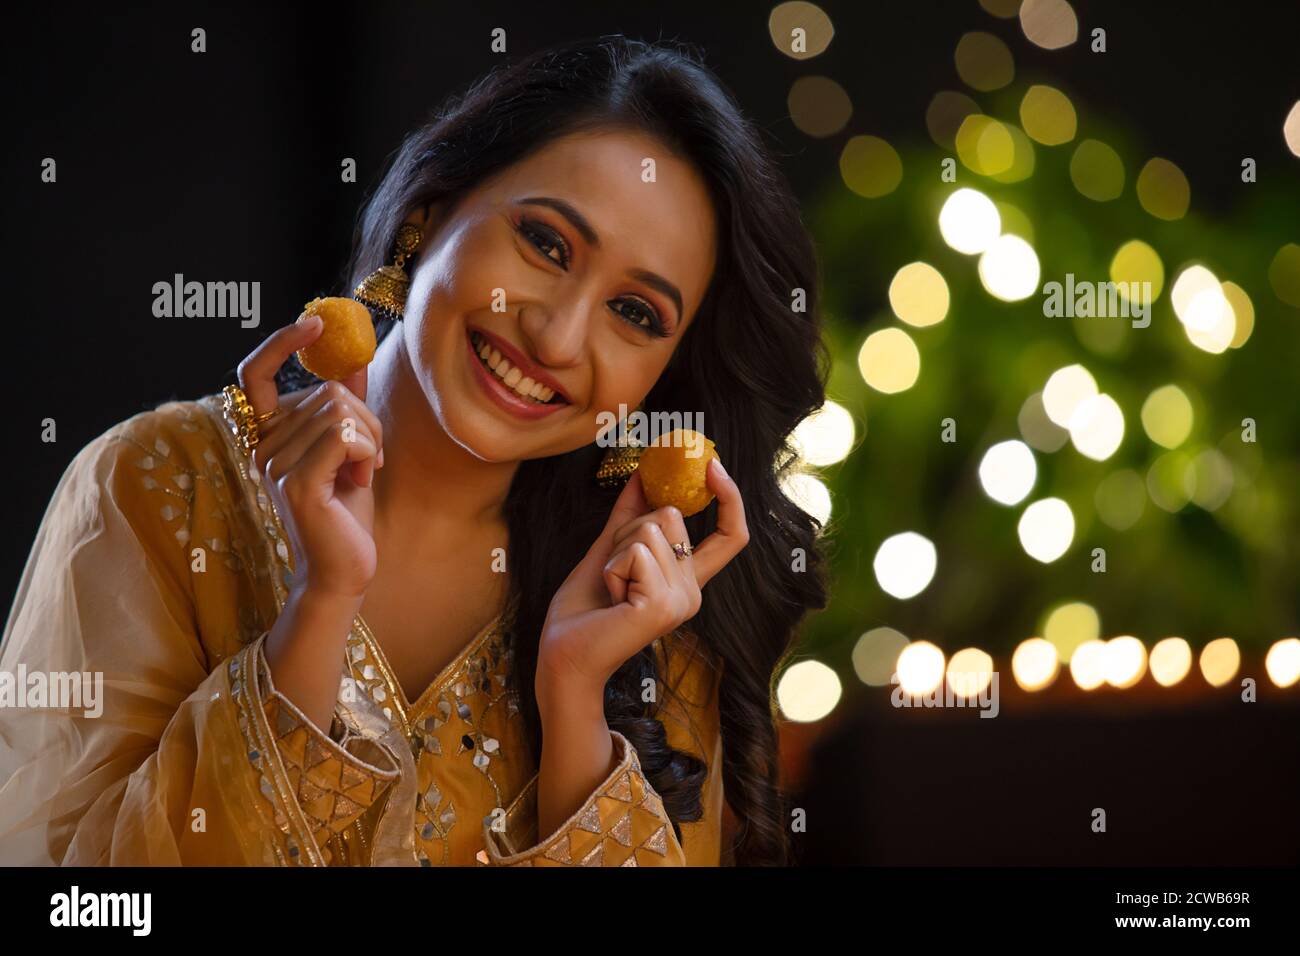 Mujer sonriendo con ladoos en sus manos en la ocasión De Diwali Foto de stock